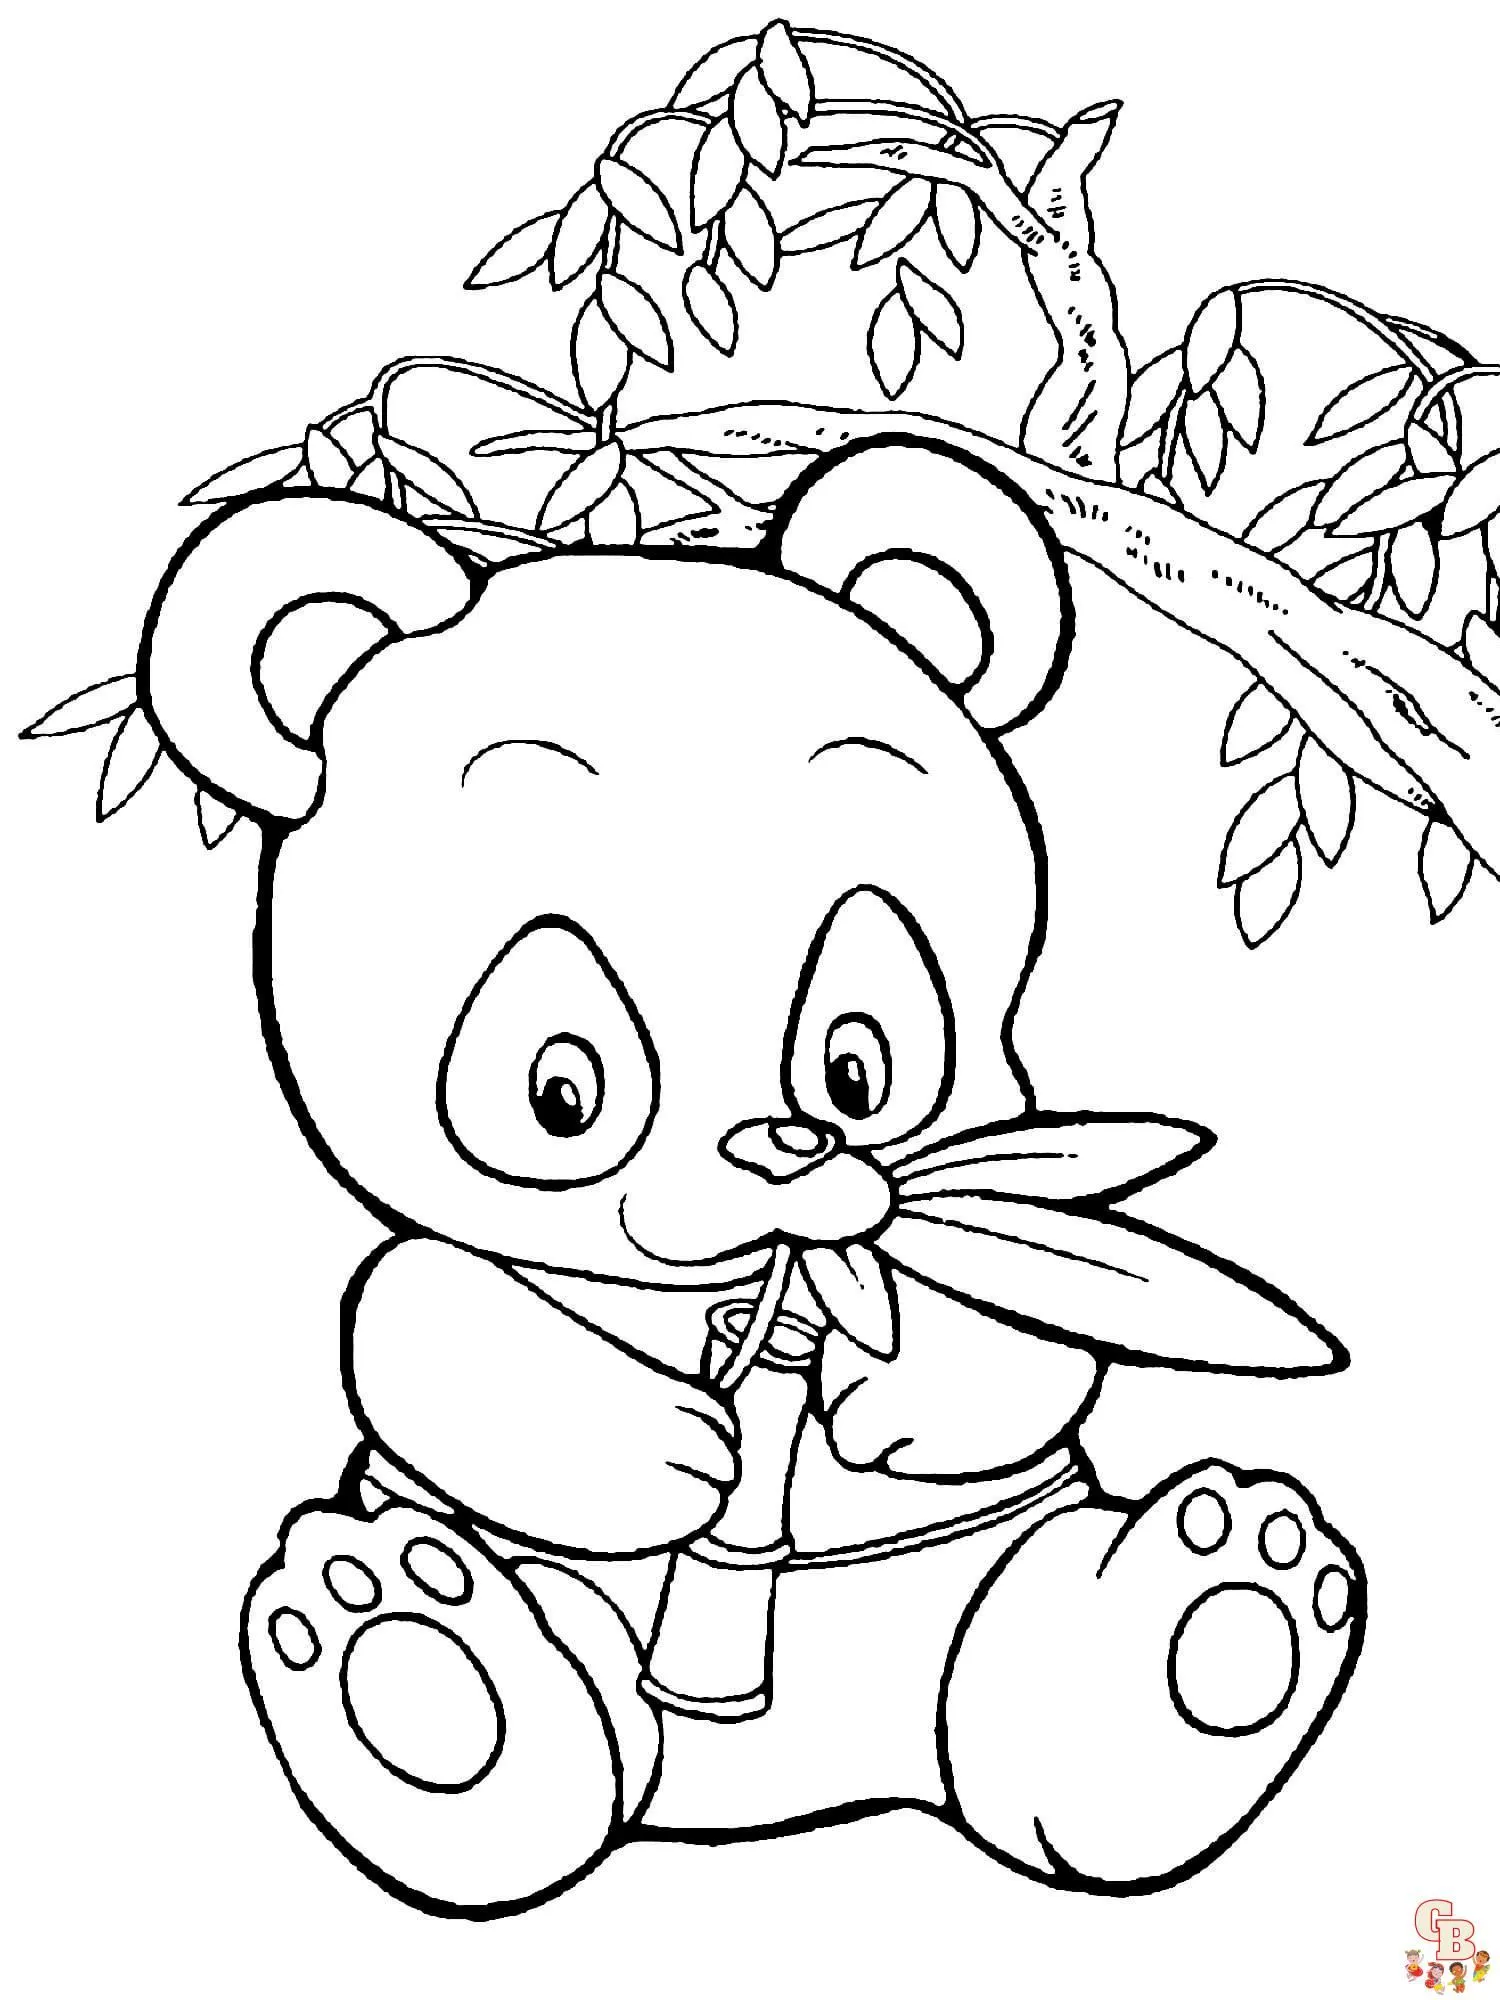 Ponte creativo con las dibujos de panda para colorear